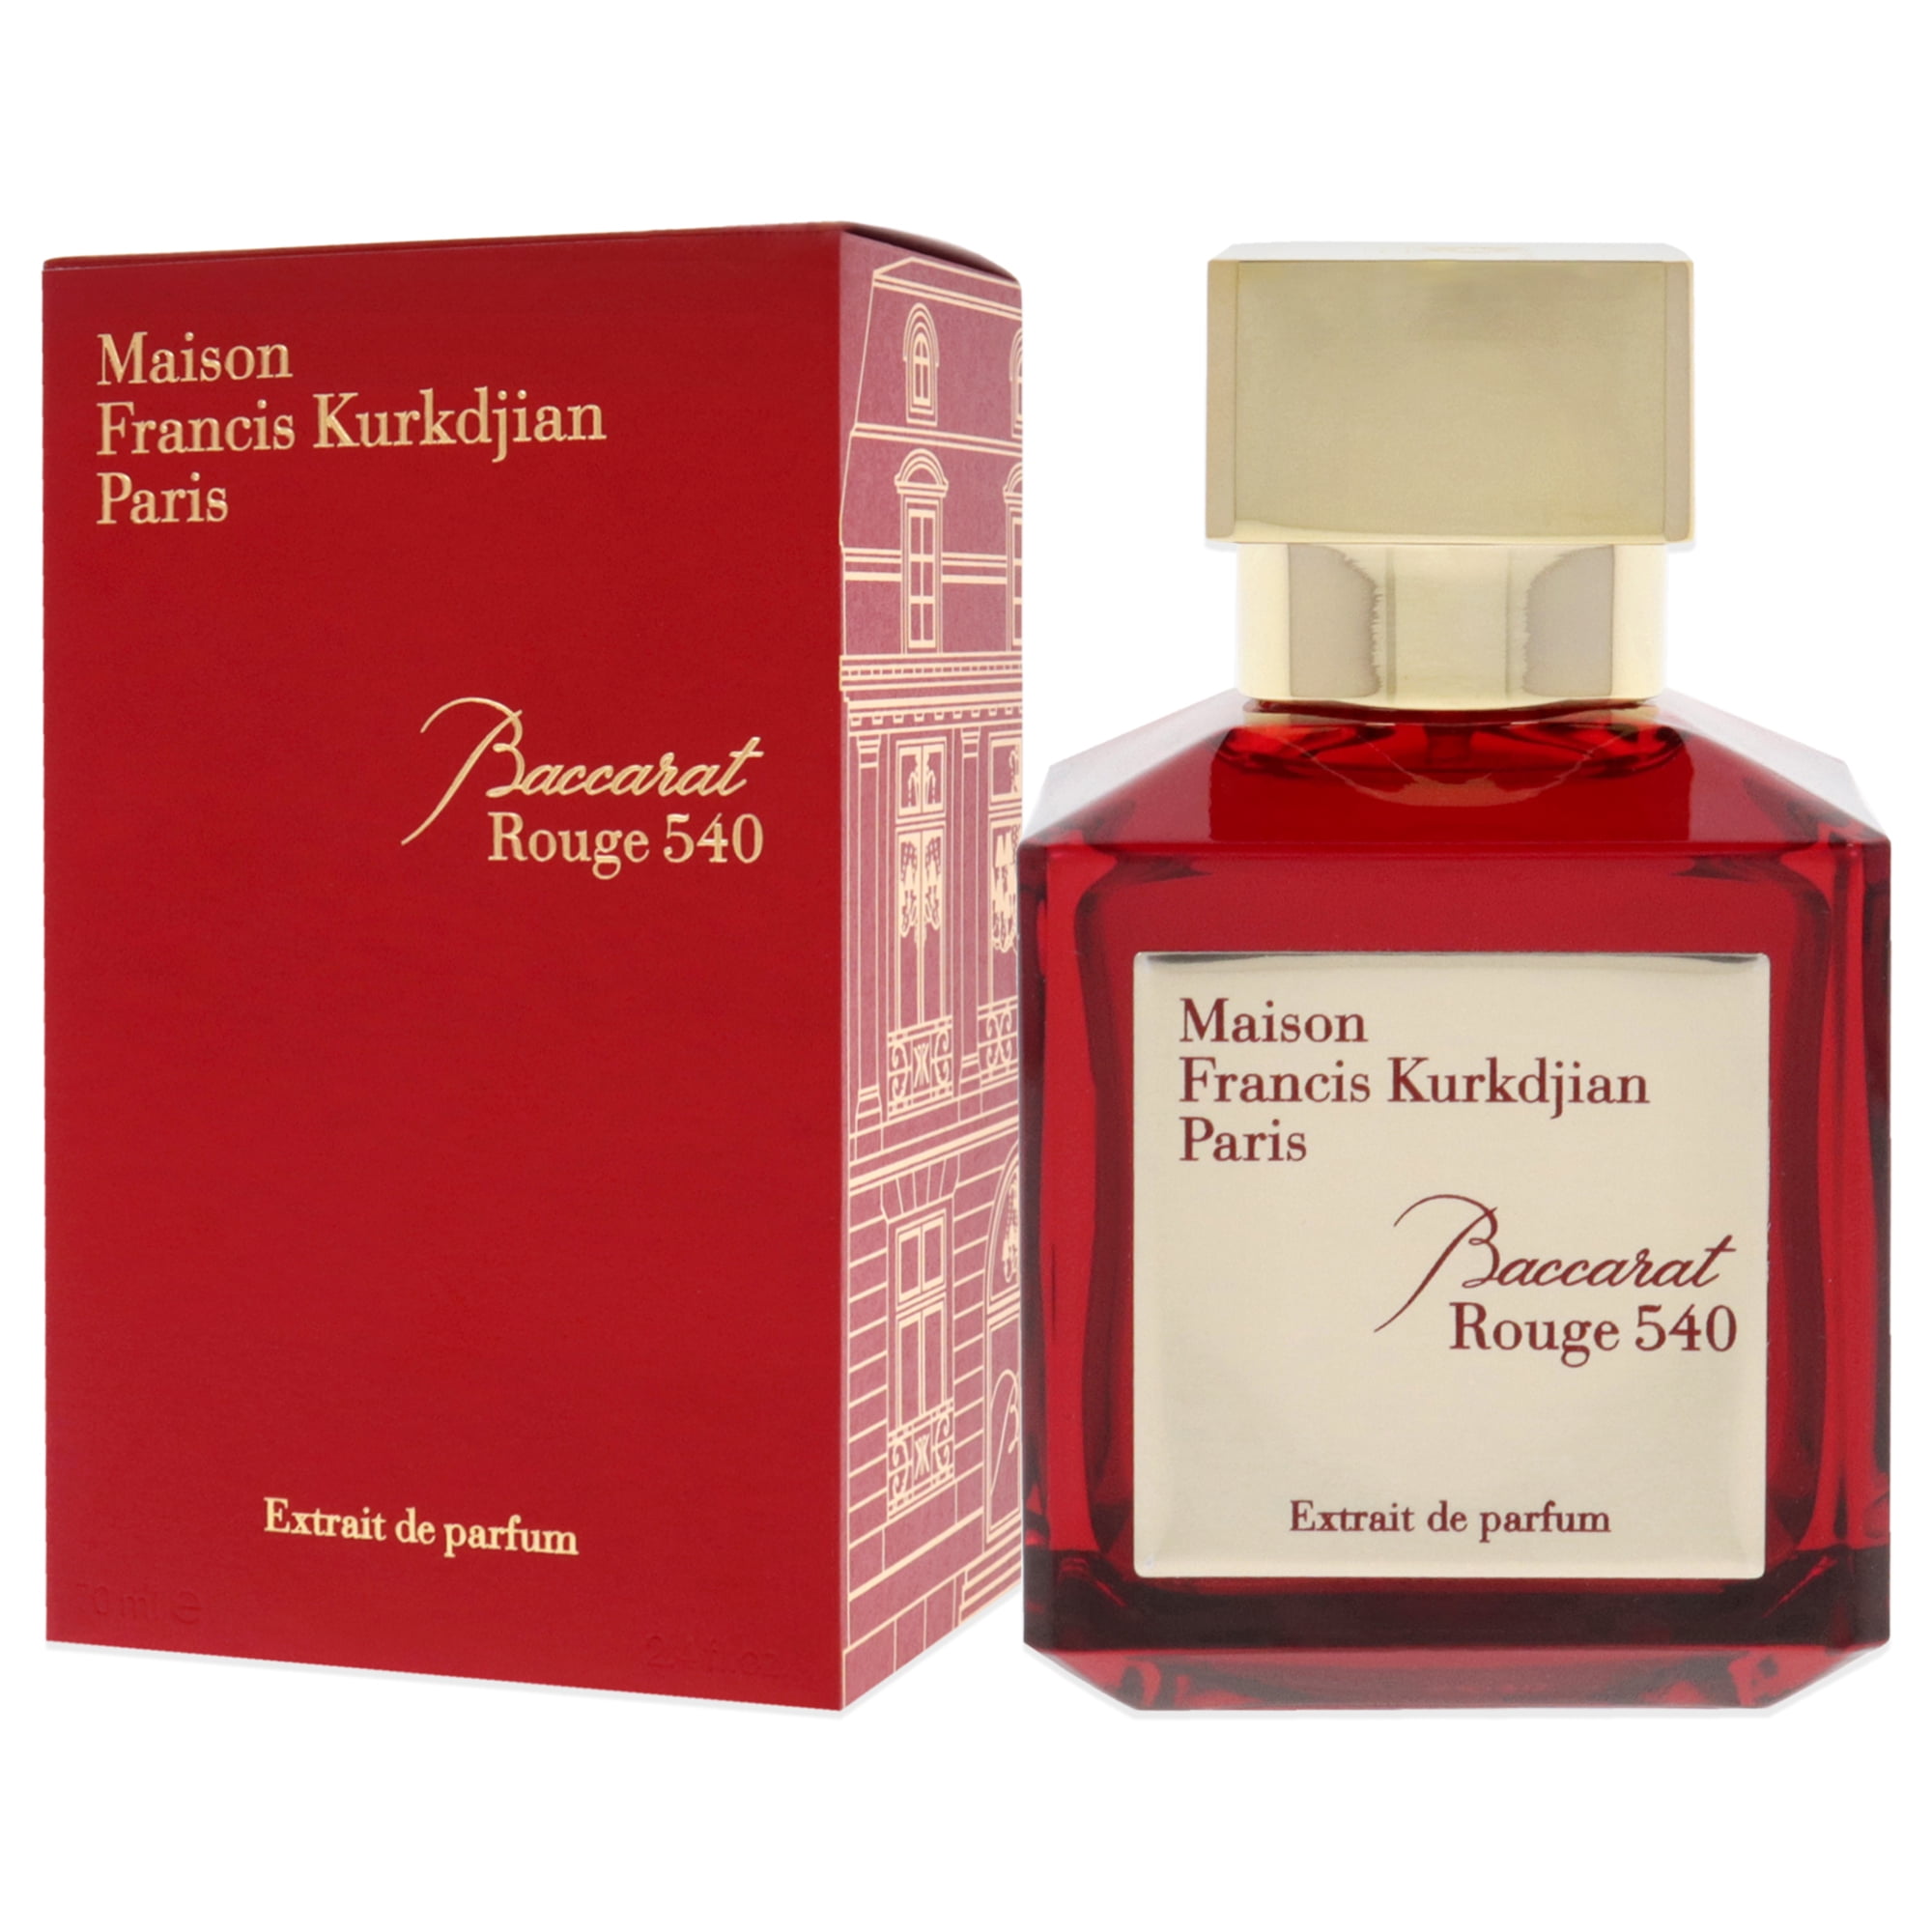 Maison Francis Kurkdjian Baccarat Rouge 540 Eau de Parfum - Lowest Price